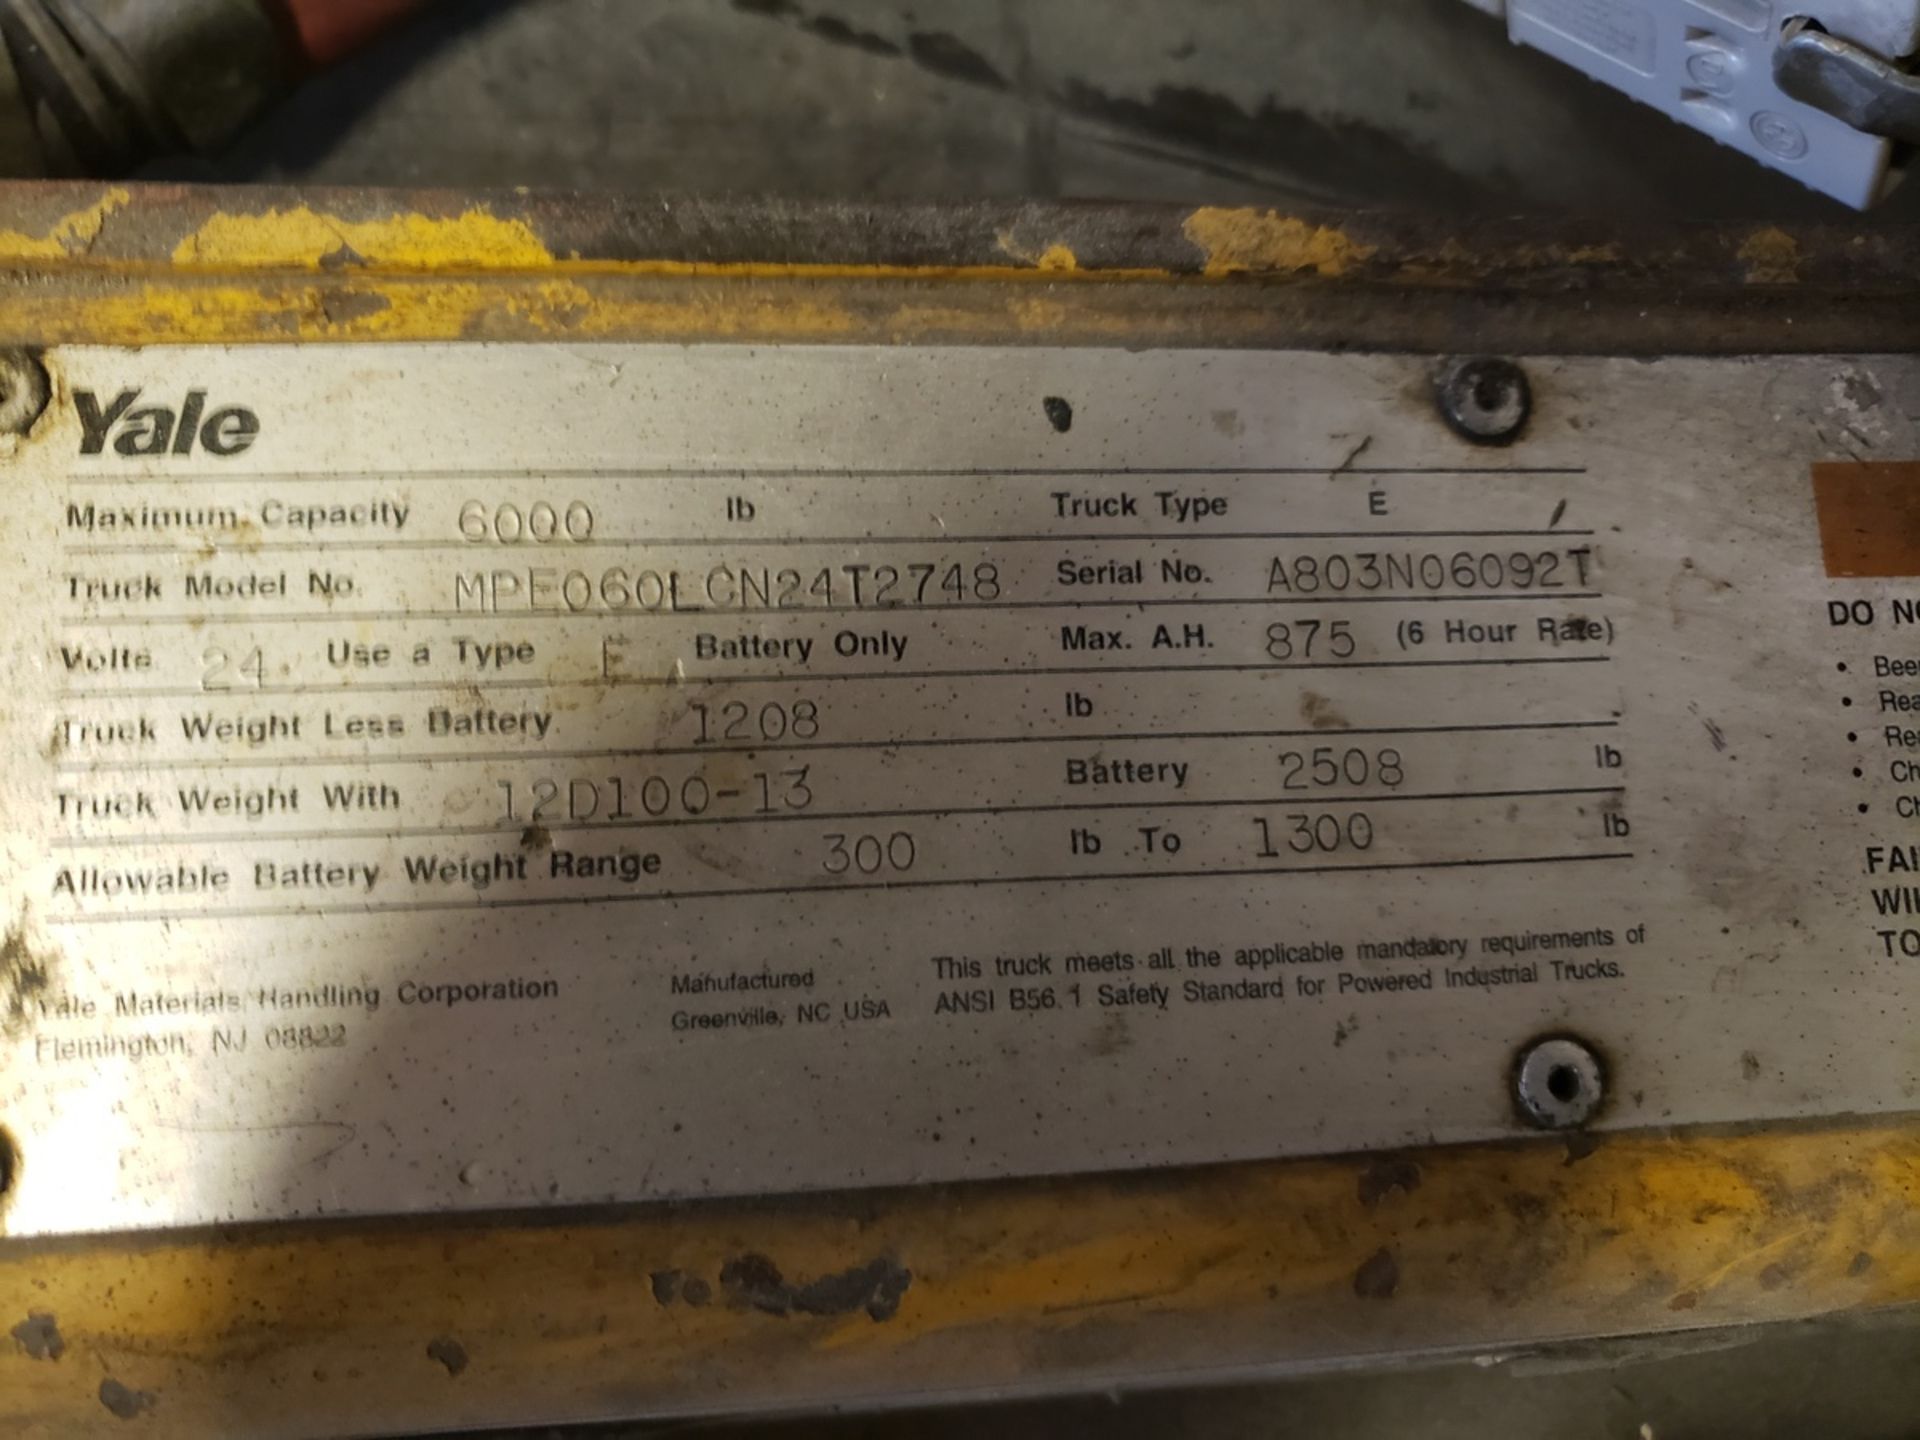 Yale Electric Pallet Jack, Cap. 6000 lbs., M# MPE060LCN24T2748, S/N A803N06092T | Rig Fee: $150 - Image 2 of 2